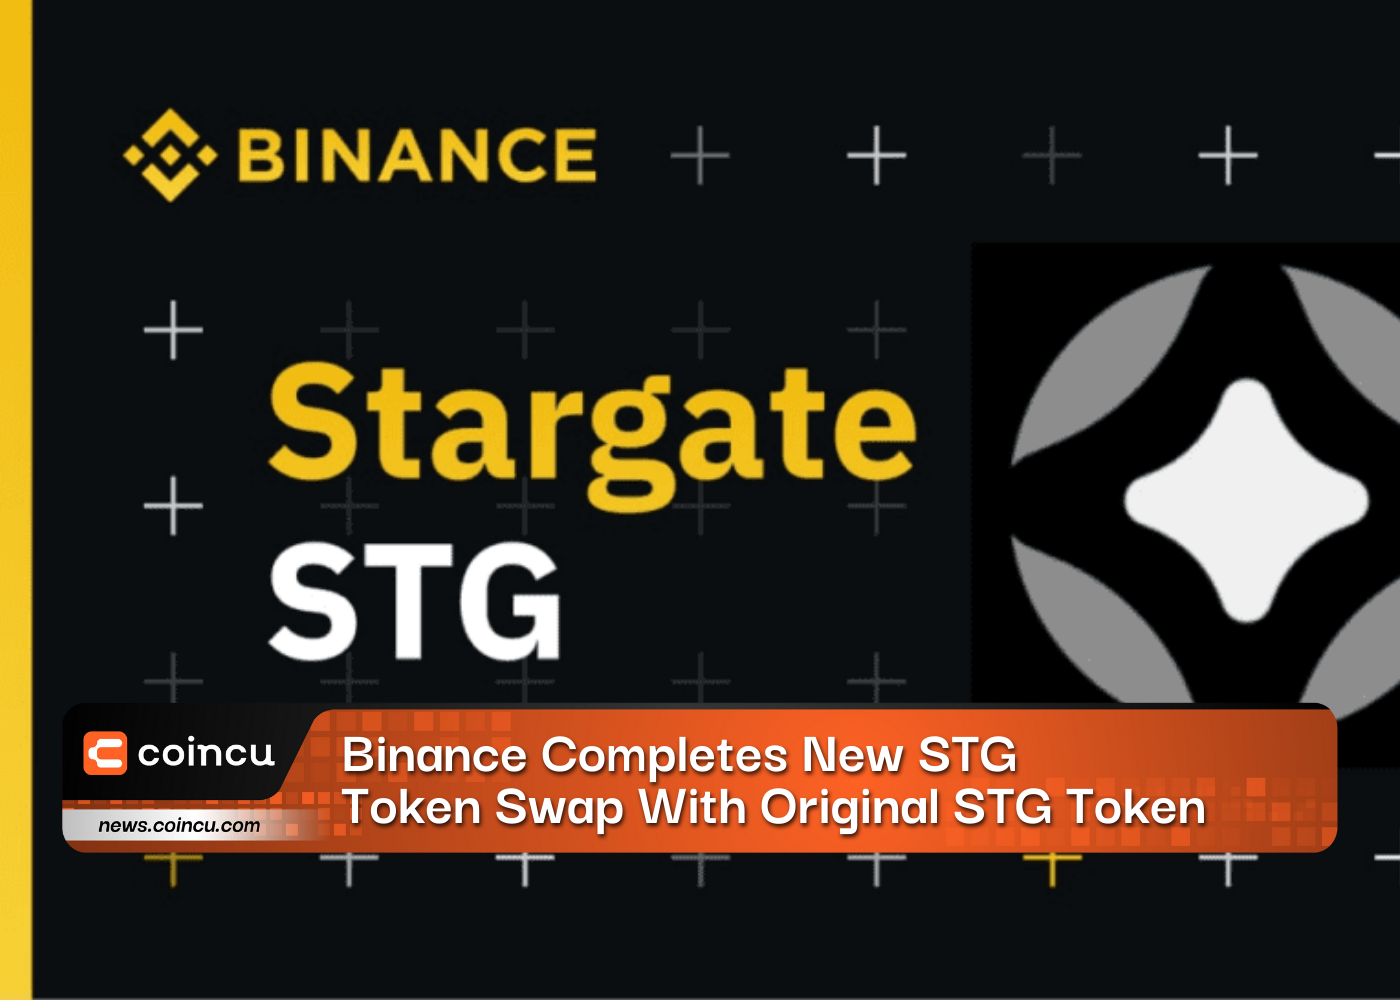 Binance Completes New STG Token Swap With Original STG Token